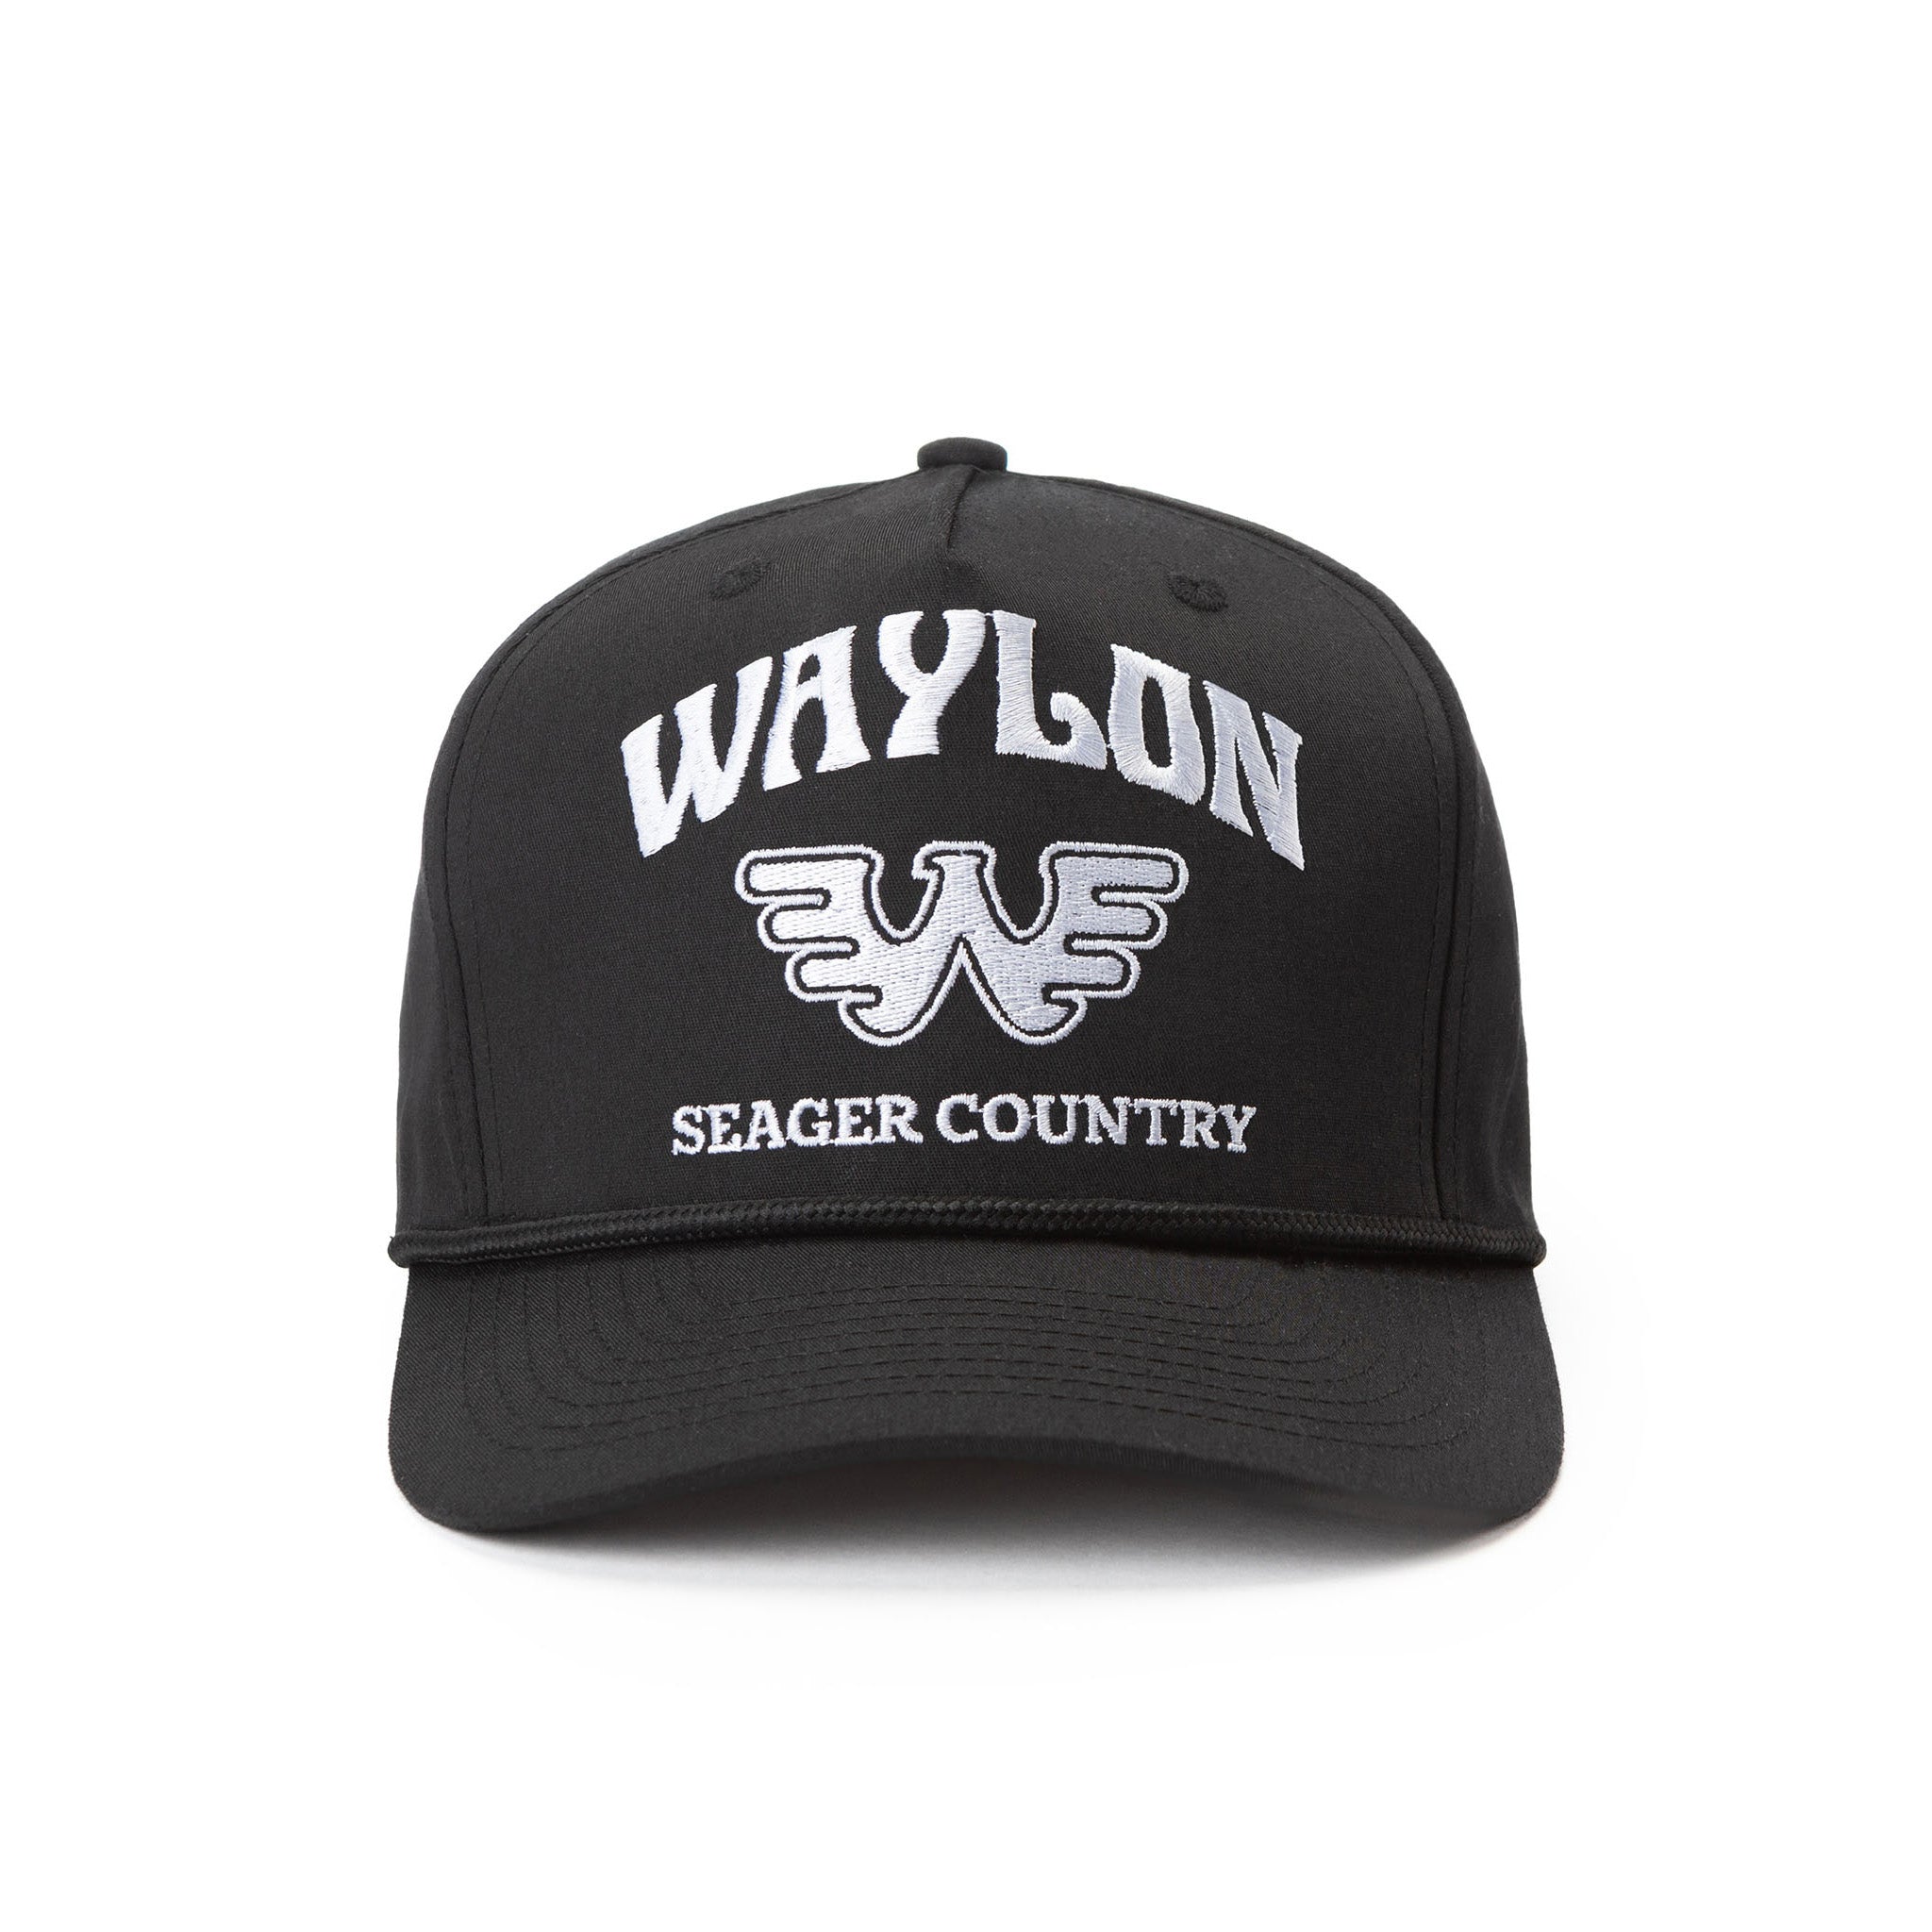 Seager x Waylon Jennings Country Snapback Black